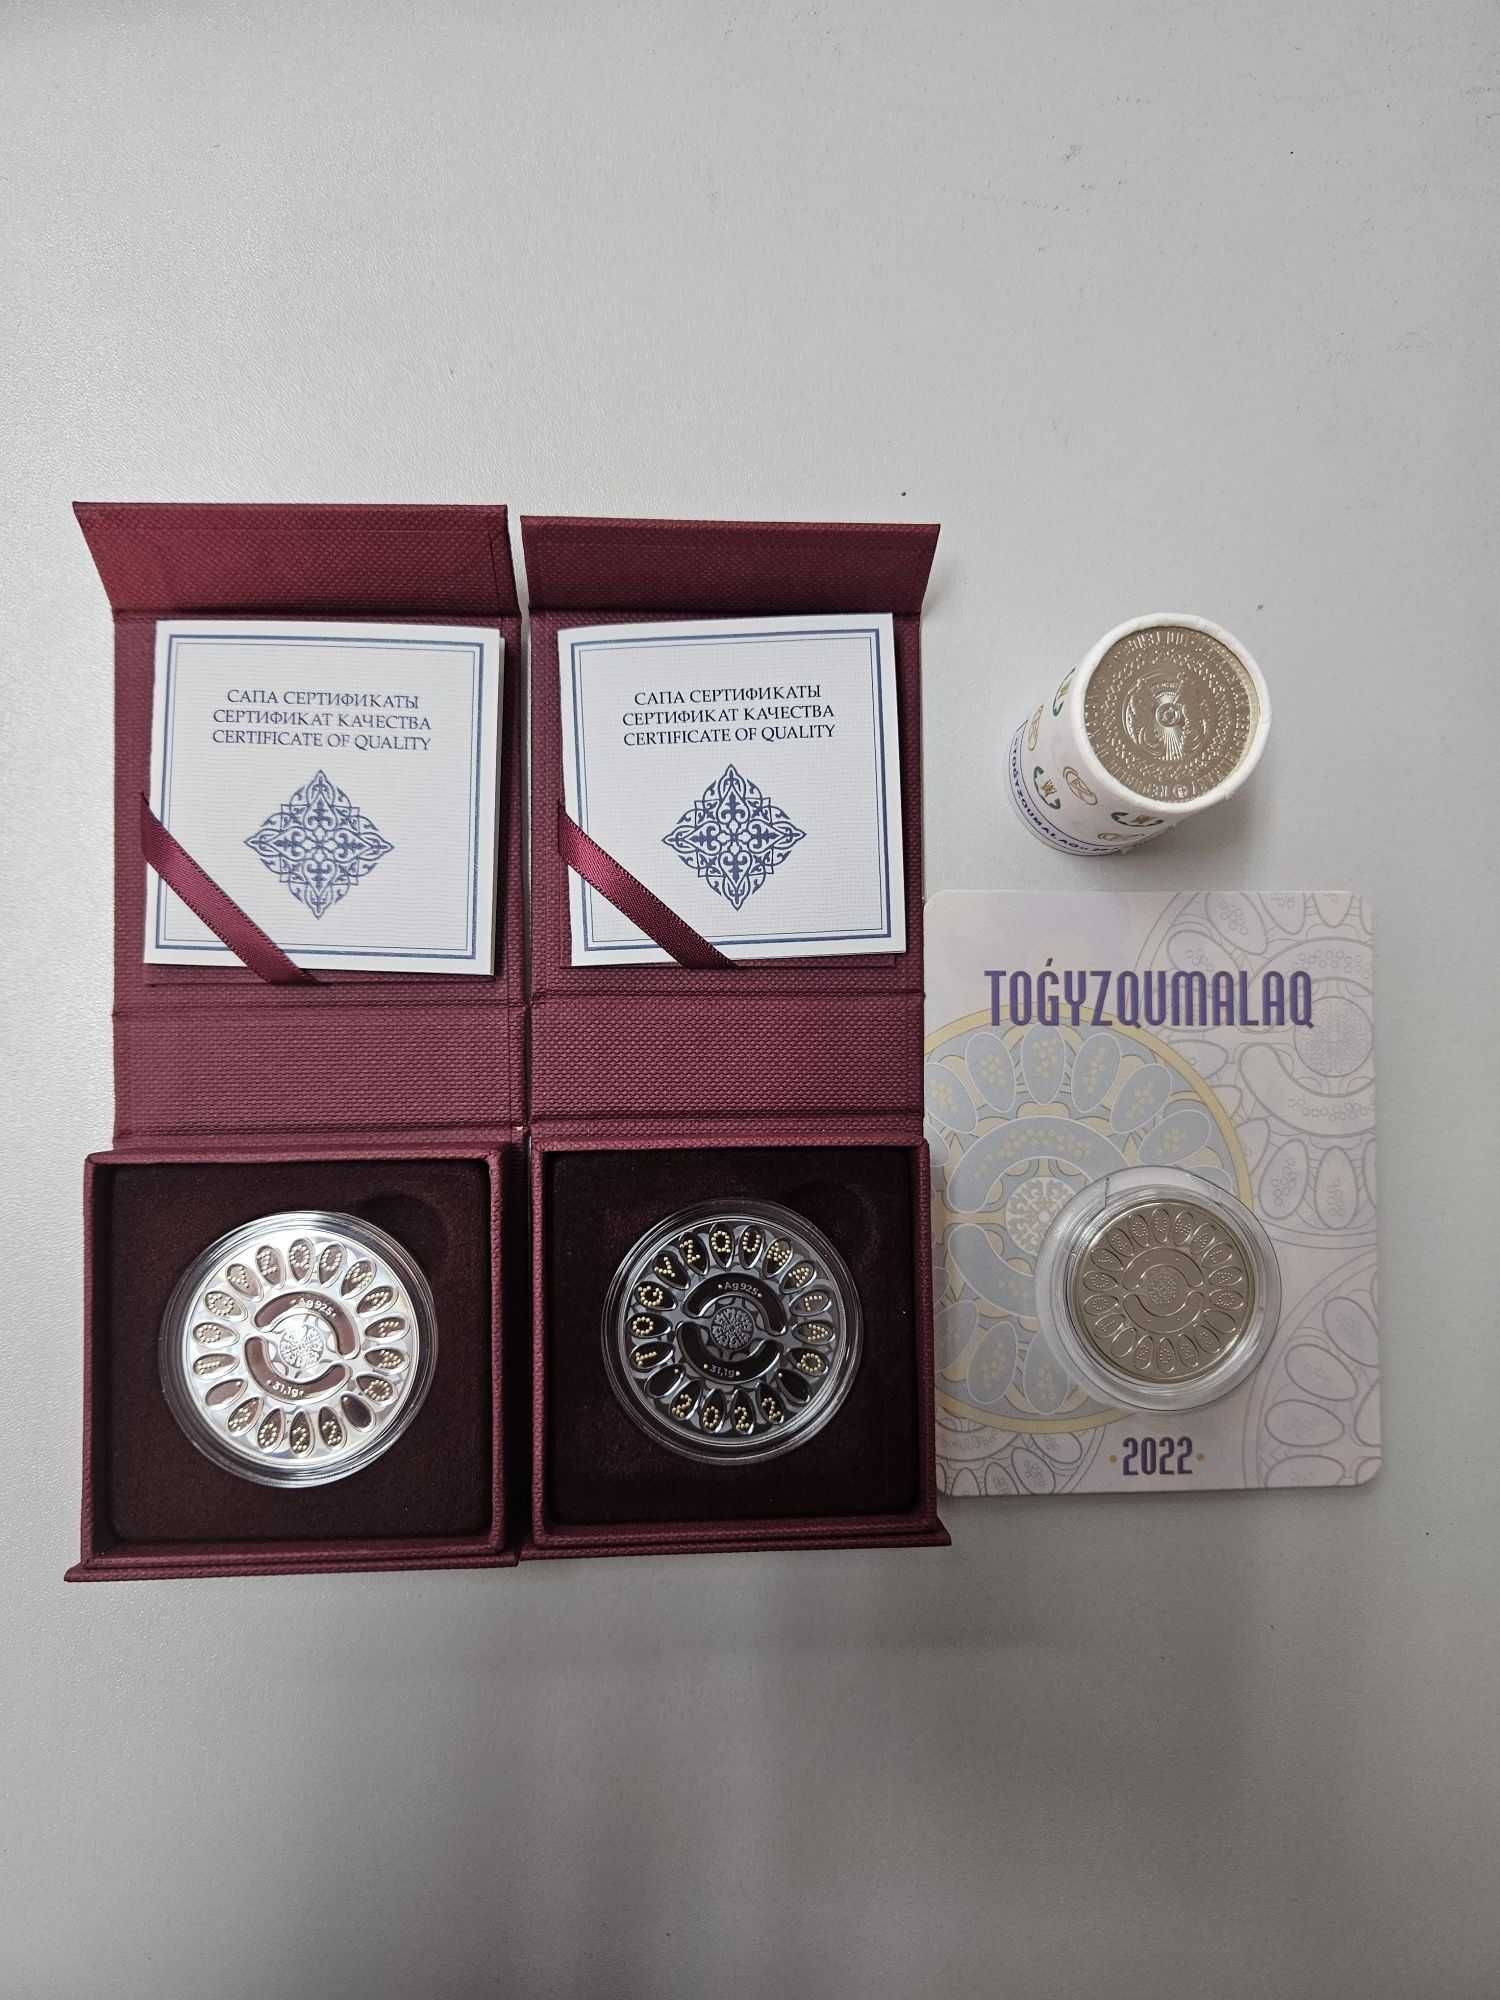 Монета TOGYZQUMALAQ (Тогыз кумалак) с позолотой и чернением